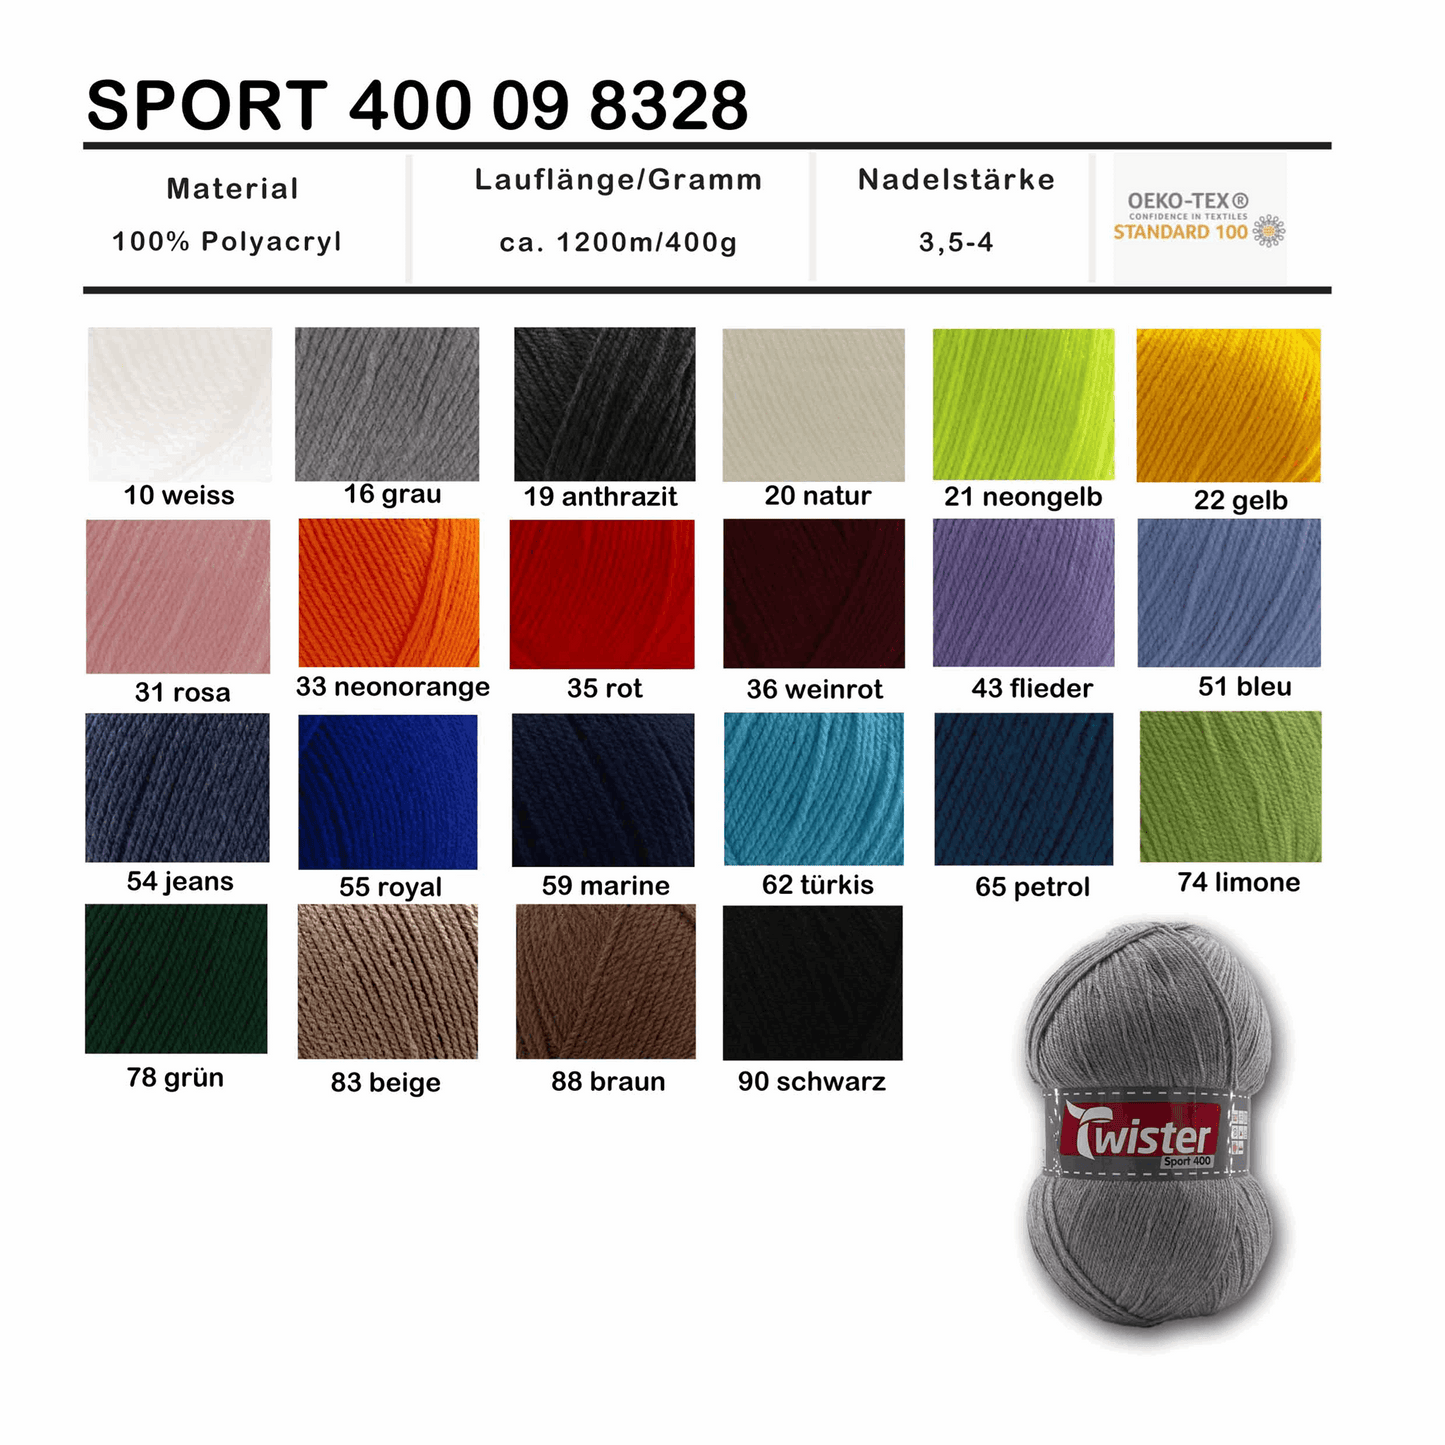 Twister Sport 400, 98328, Farbe dkl.-türkis 62